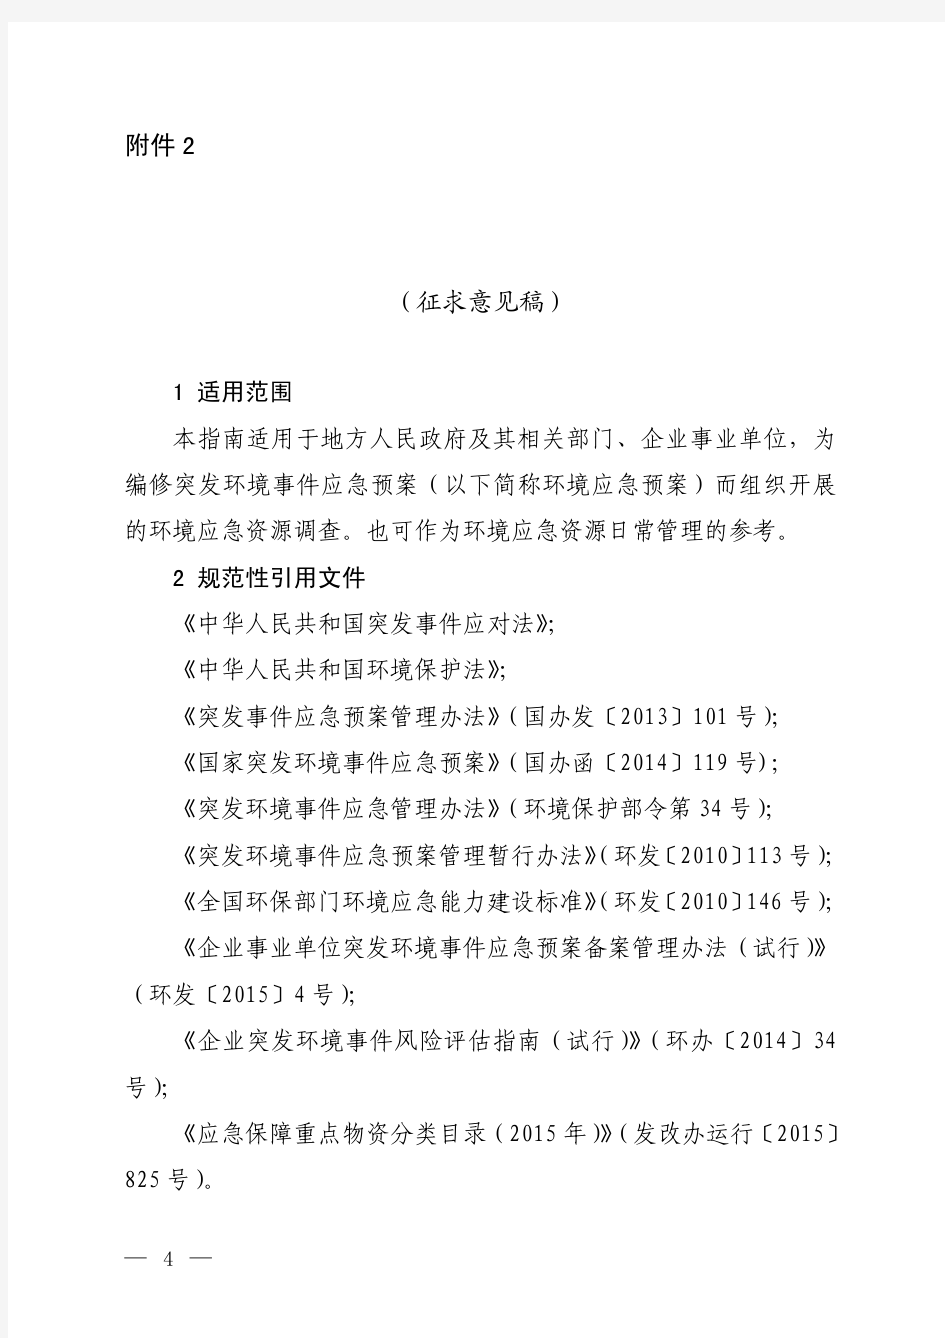 环境应急资源调查指引-中华人民共和国环境保护部